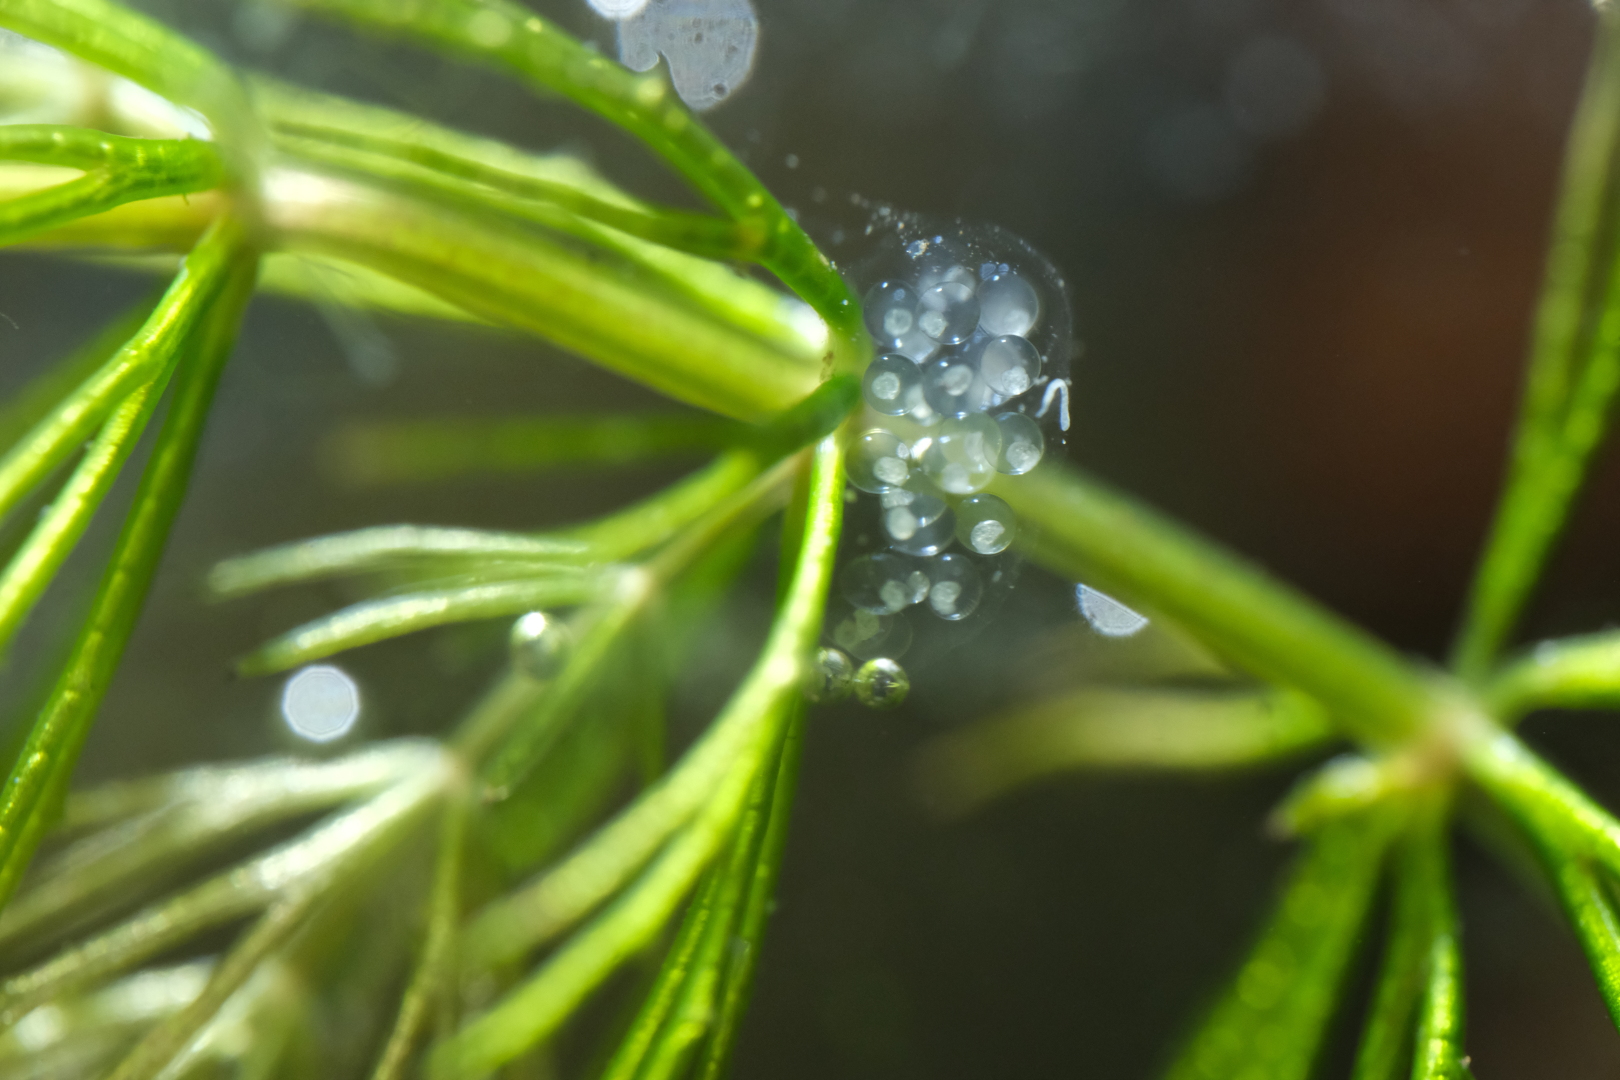 Ein weiteres Gelege wurde an meiner neuen Wasserpflanze befestigt: Ceratophyllum demersum, das Raue Hornblatt, w&auml;chst schnell und braucht nicht viel Licht. Ich hoffe, dass es vor allem schneller w&auml;chst als Schnecki es wegfressen kann.